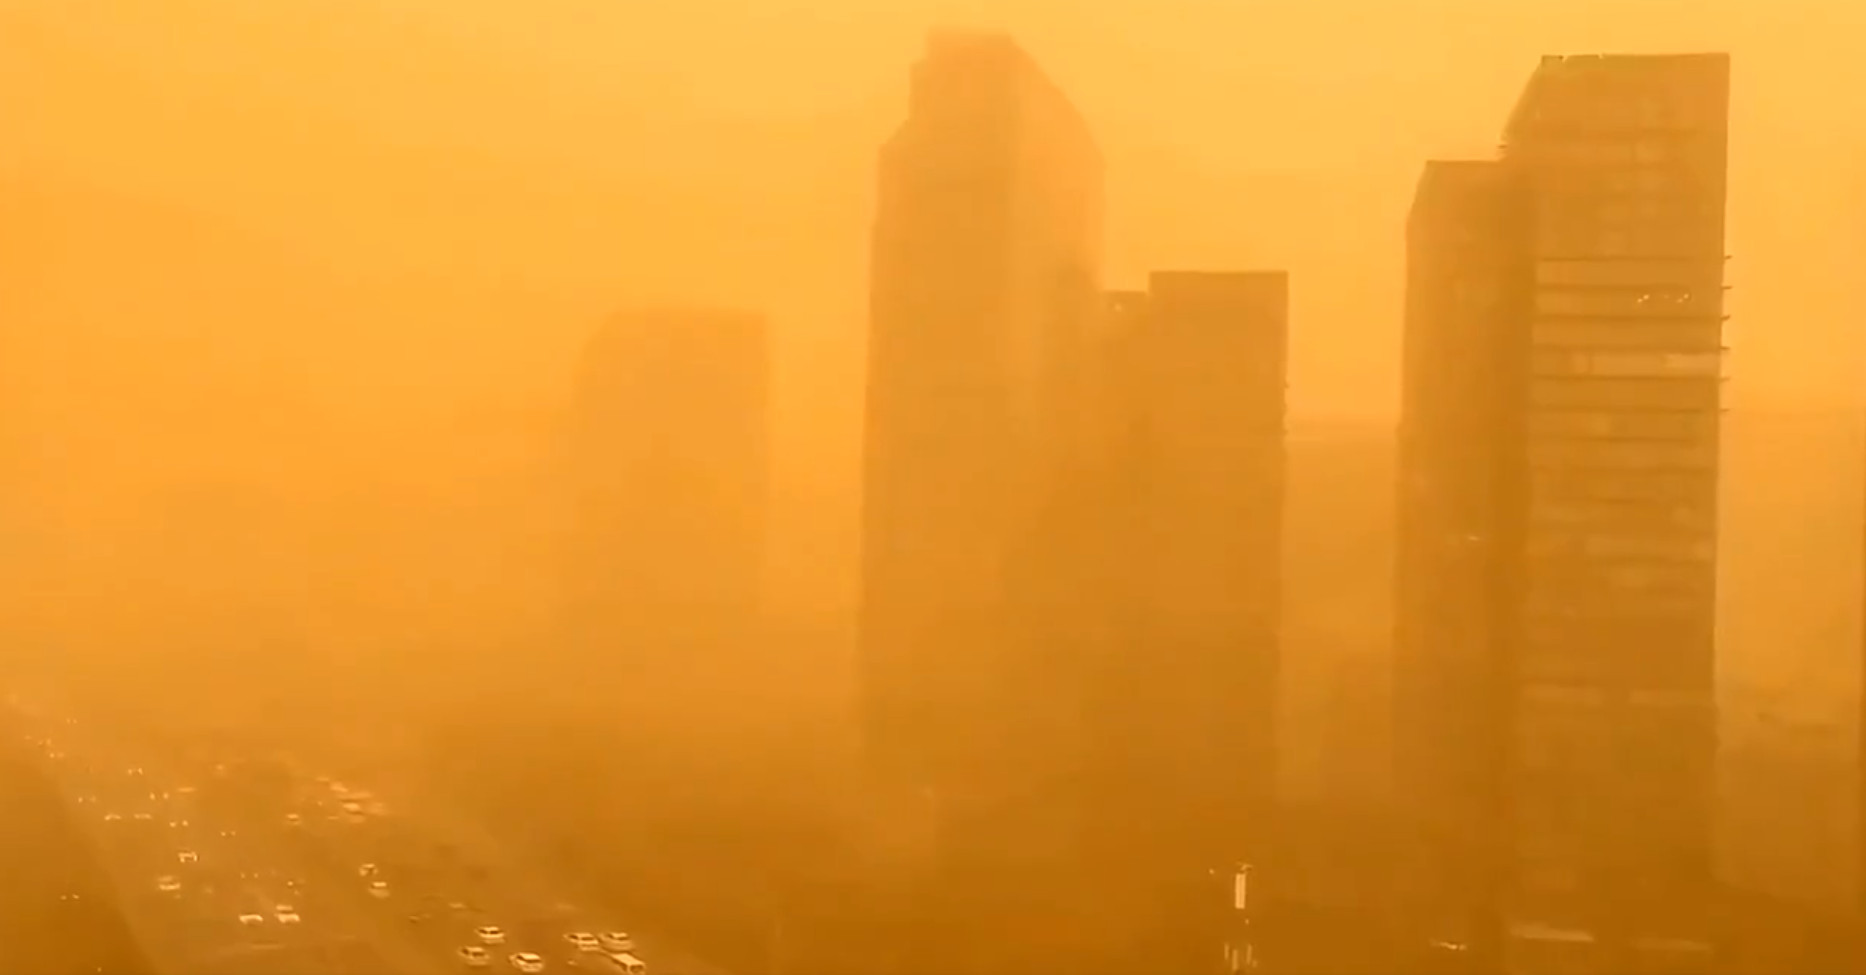 Ισχυρή αμμοθύελλα έπληξε το Πεκίνο - Αυξήθηκε ο δείκτης ατμοσφαιρικής ρύπανσης